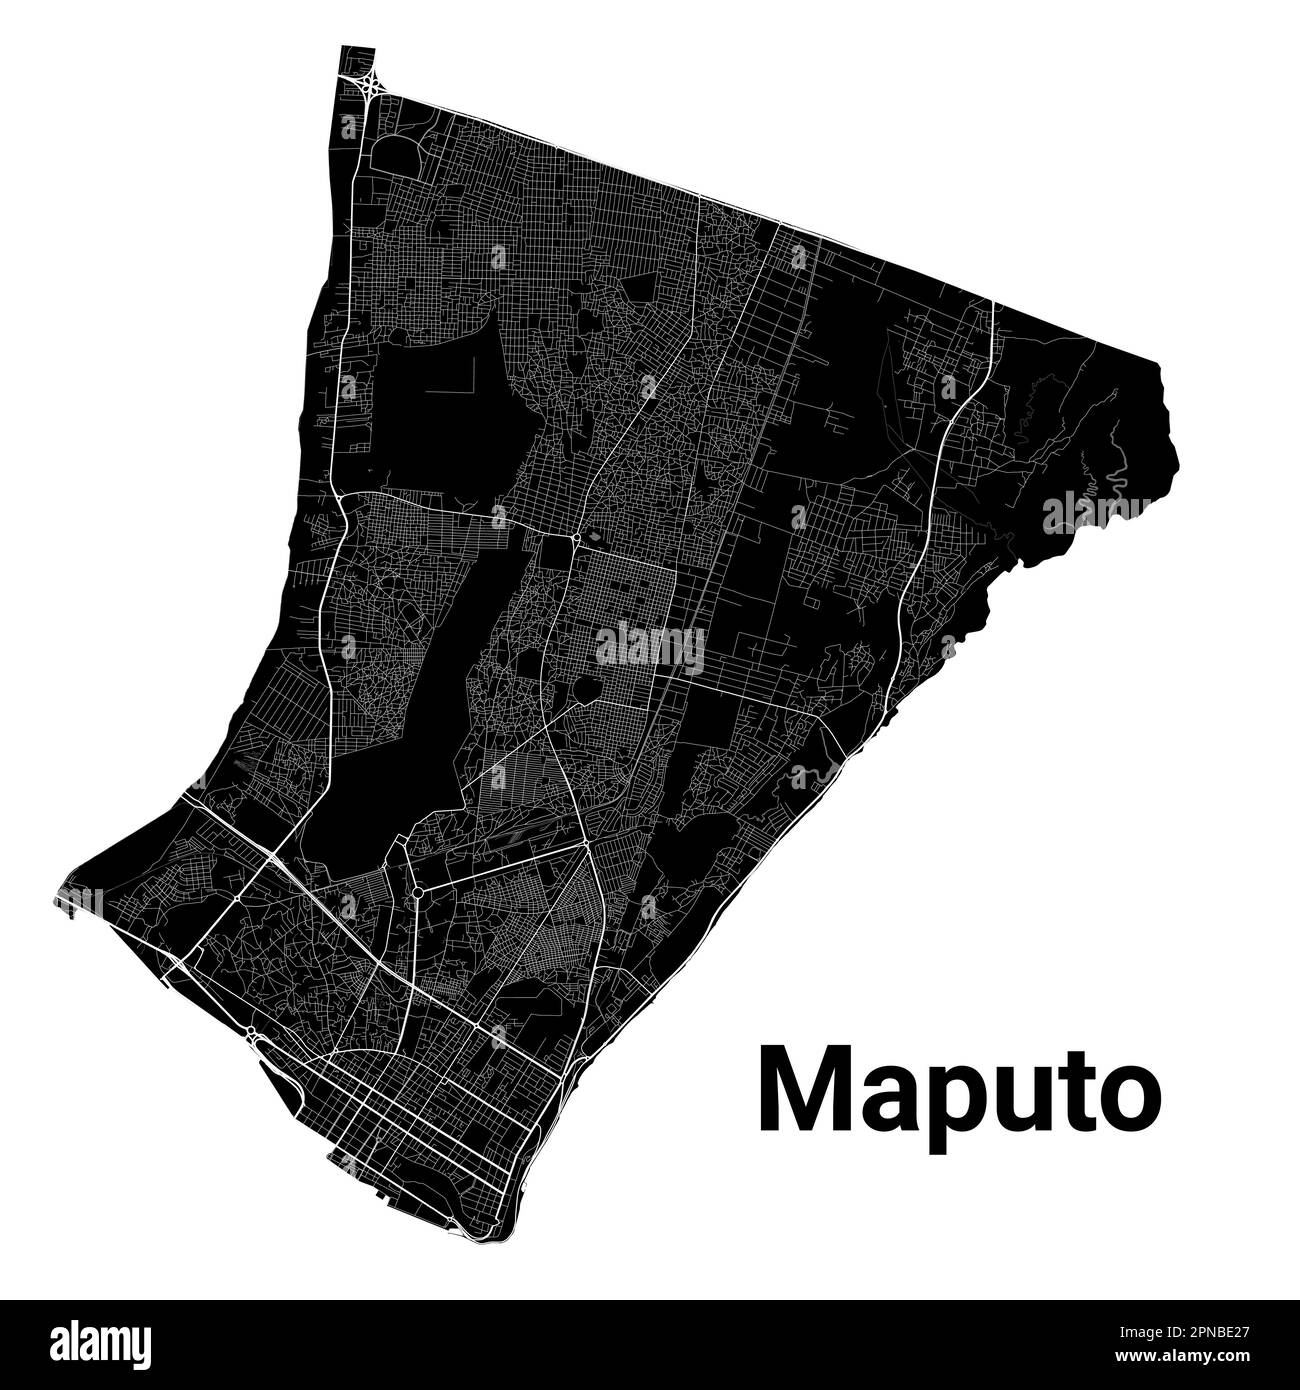 Plan de la ville de Maputo, capitale du Mozambique. Frontières administratives municipales, carte des zones en noir et blanc avec rivières et routes, parcs et chemins de fer. Vecteur i Illustration de Vecteur